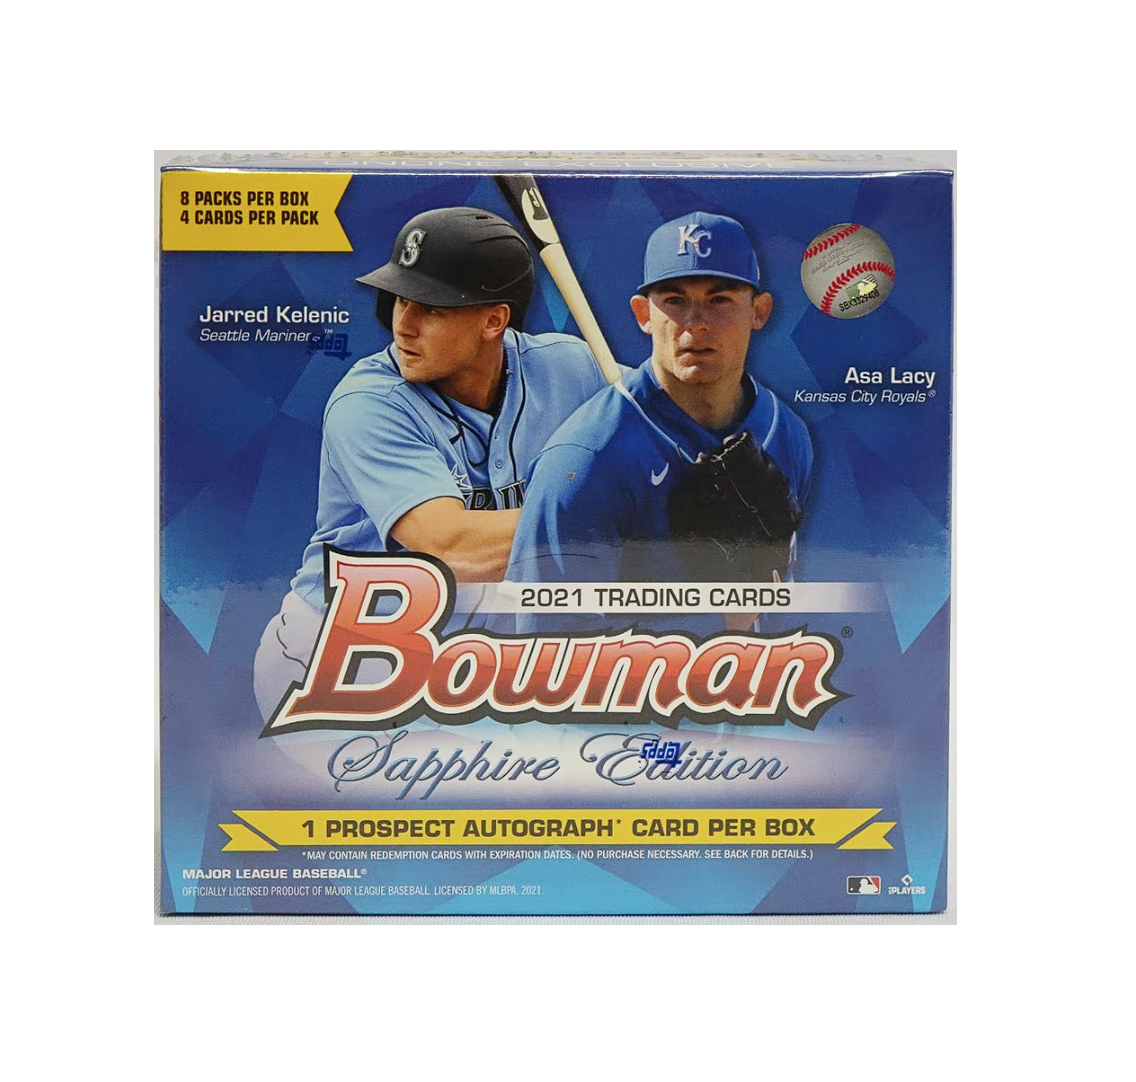 Spence Torkelson 2021 Topps Bowman Base Set Baseball Card 